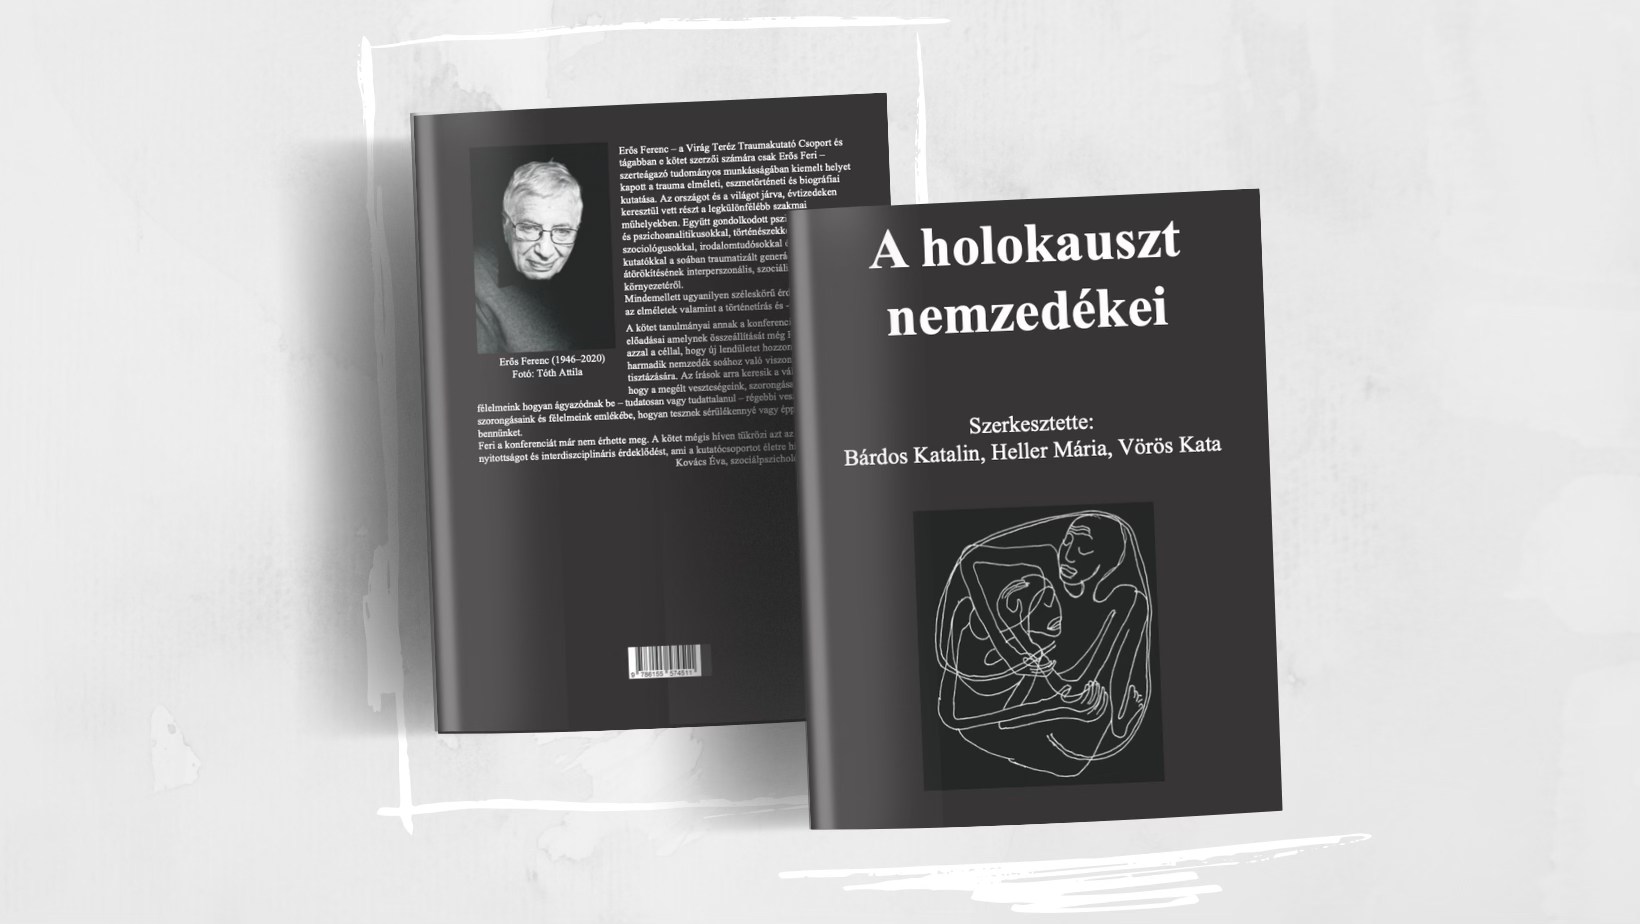 A holokauszt nemzedékei – könyvbemutató a Zsidó Egyetemen | Szombat Online